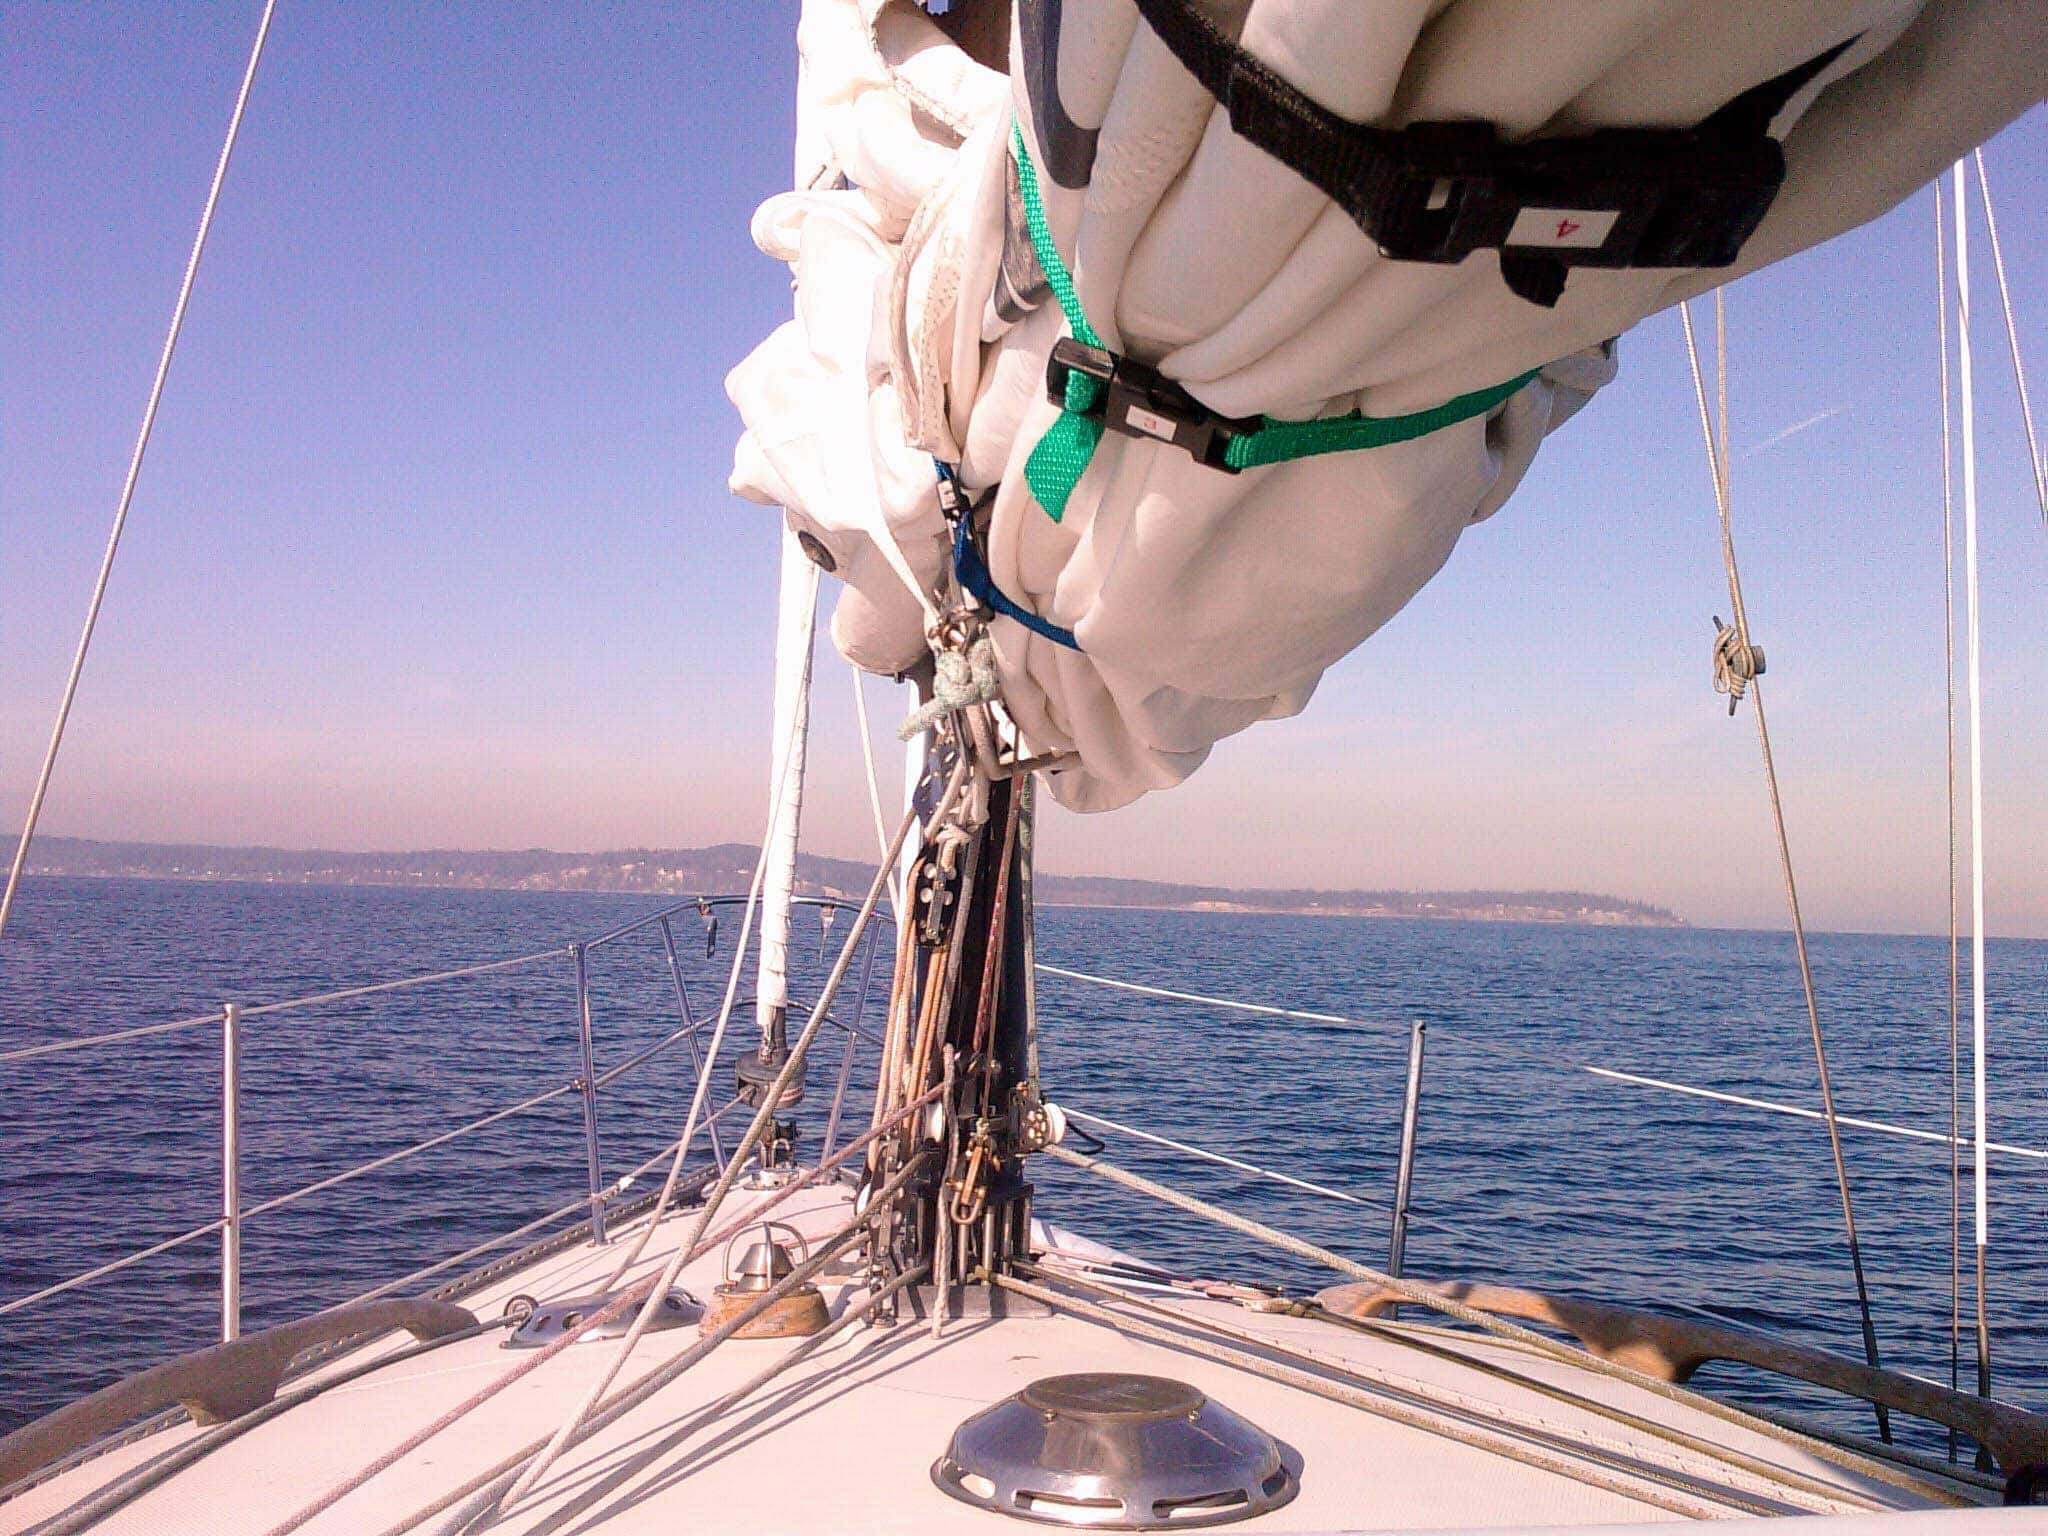 Harrowing sail